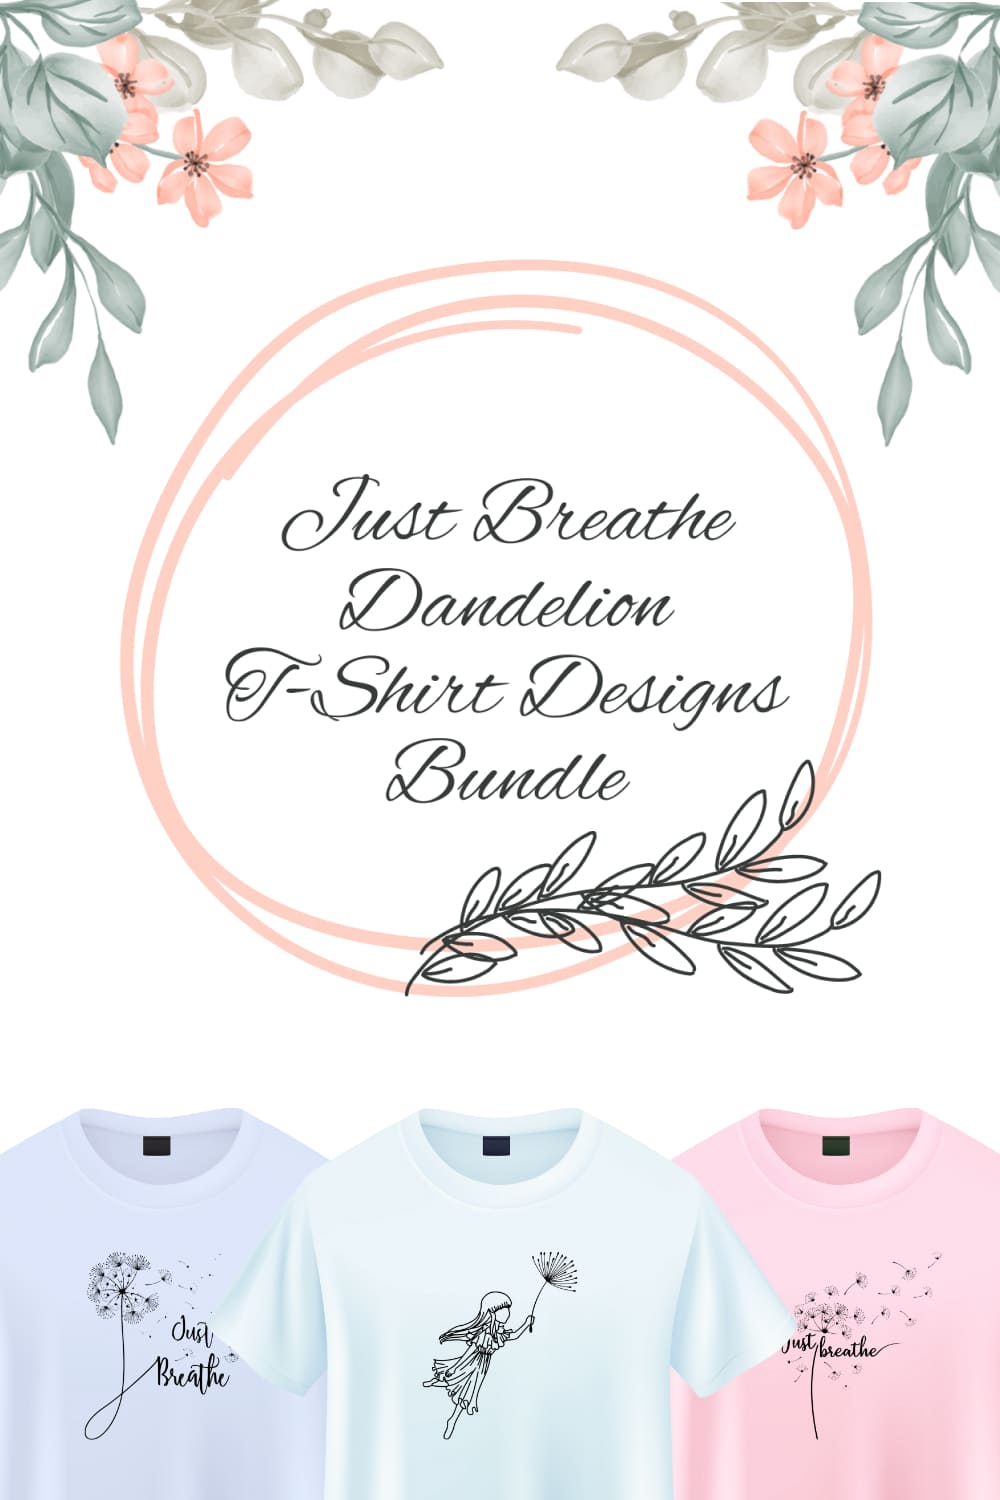 Just Breathe Dandelion T-shirt Designs Bundle - Pinterest.